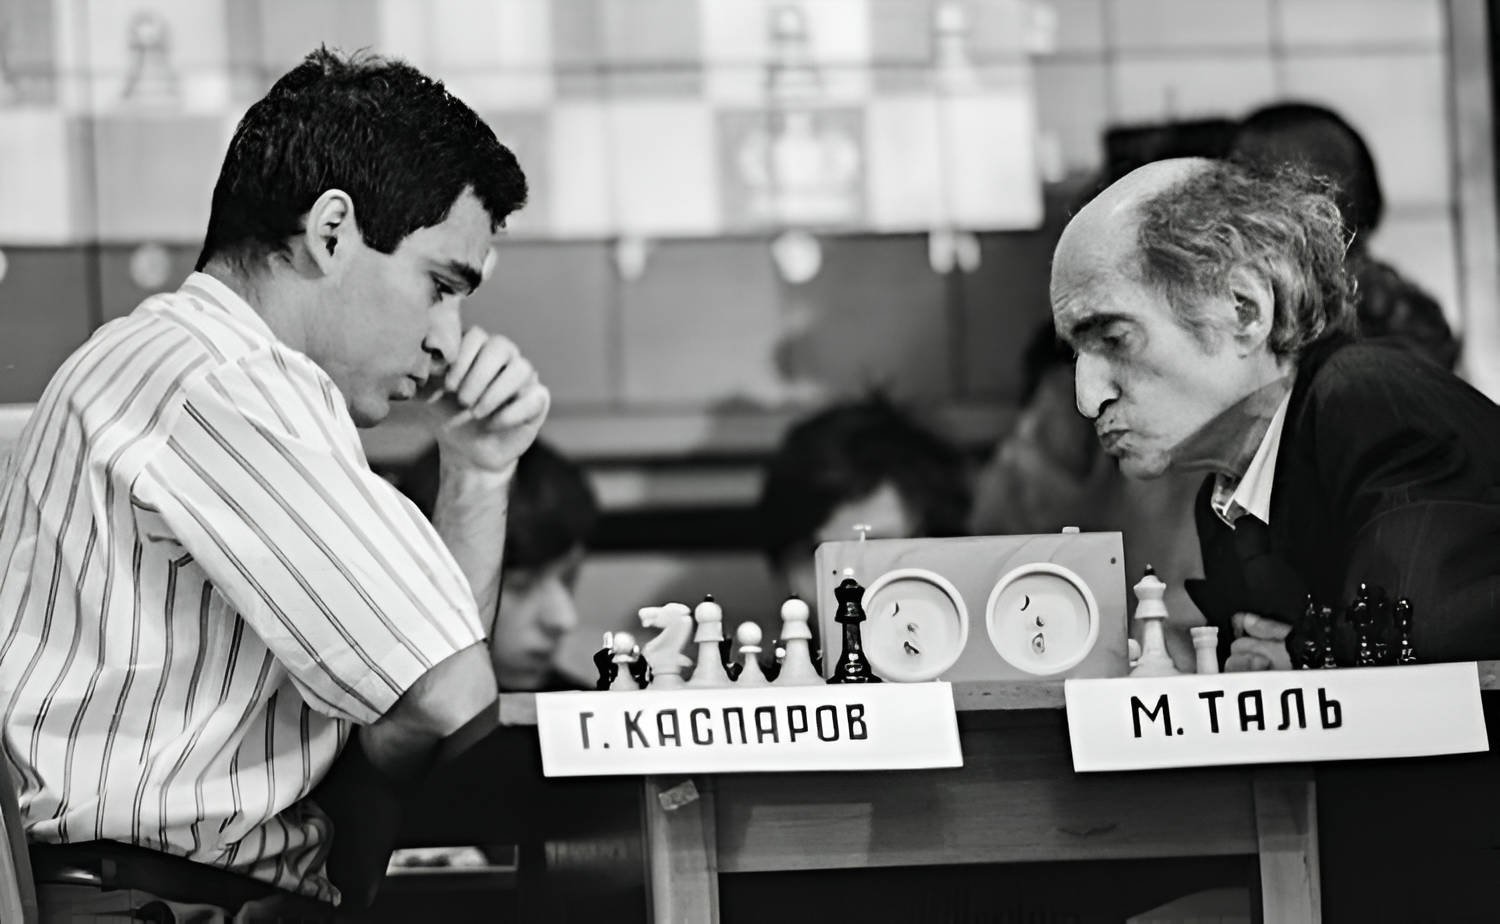 Top left looks like Mikhail Tal vs Garry Kasparov (Garry Chess